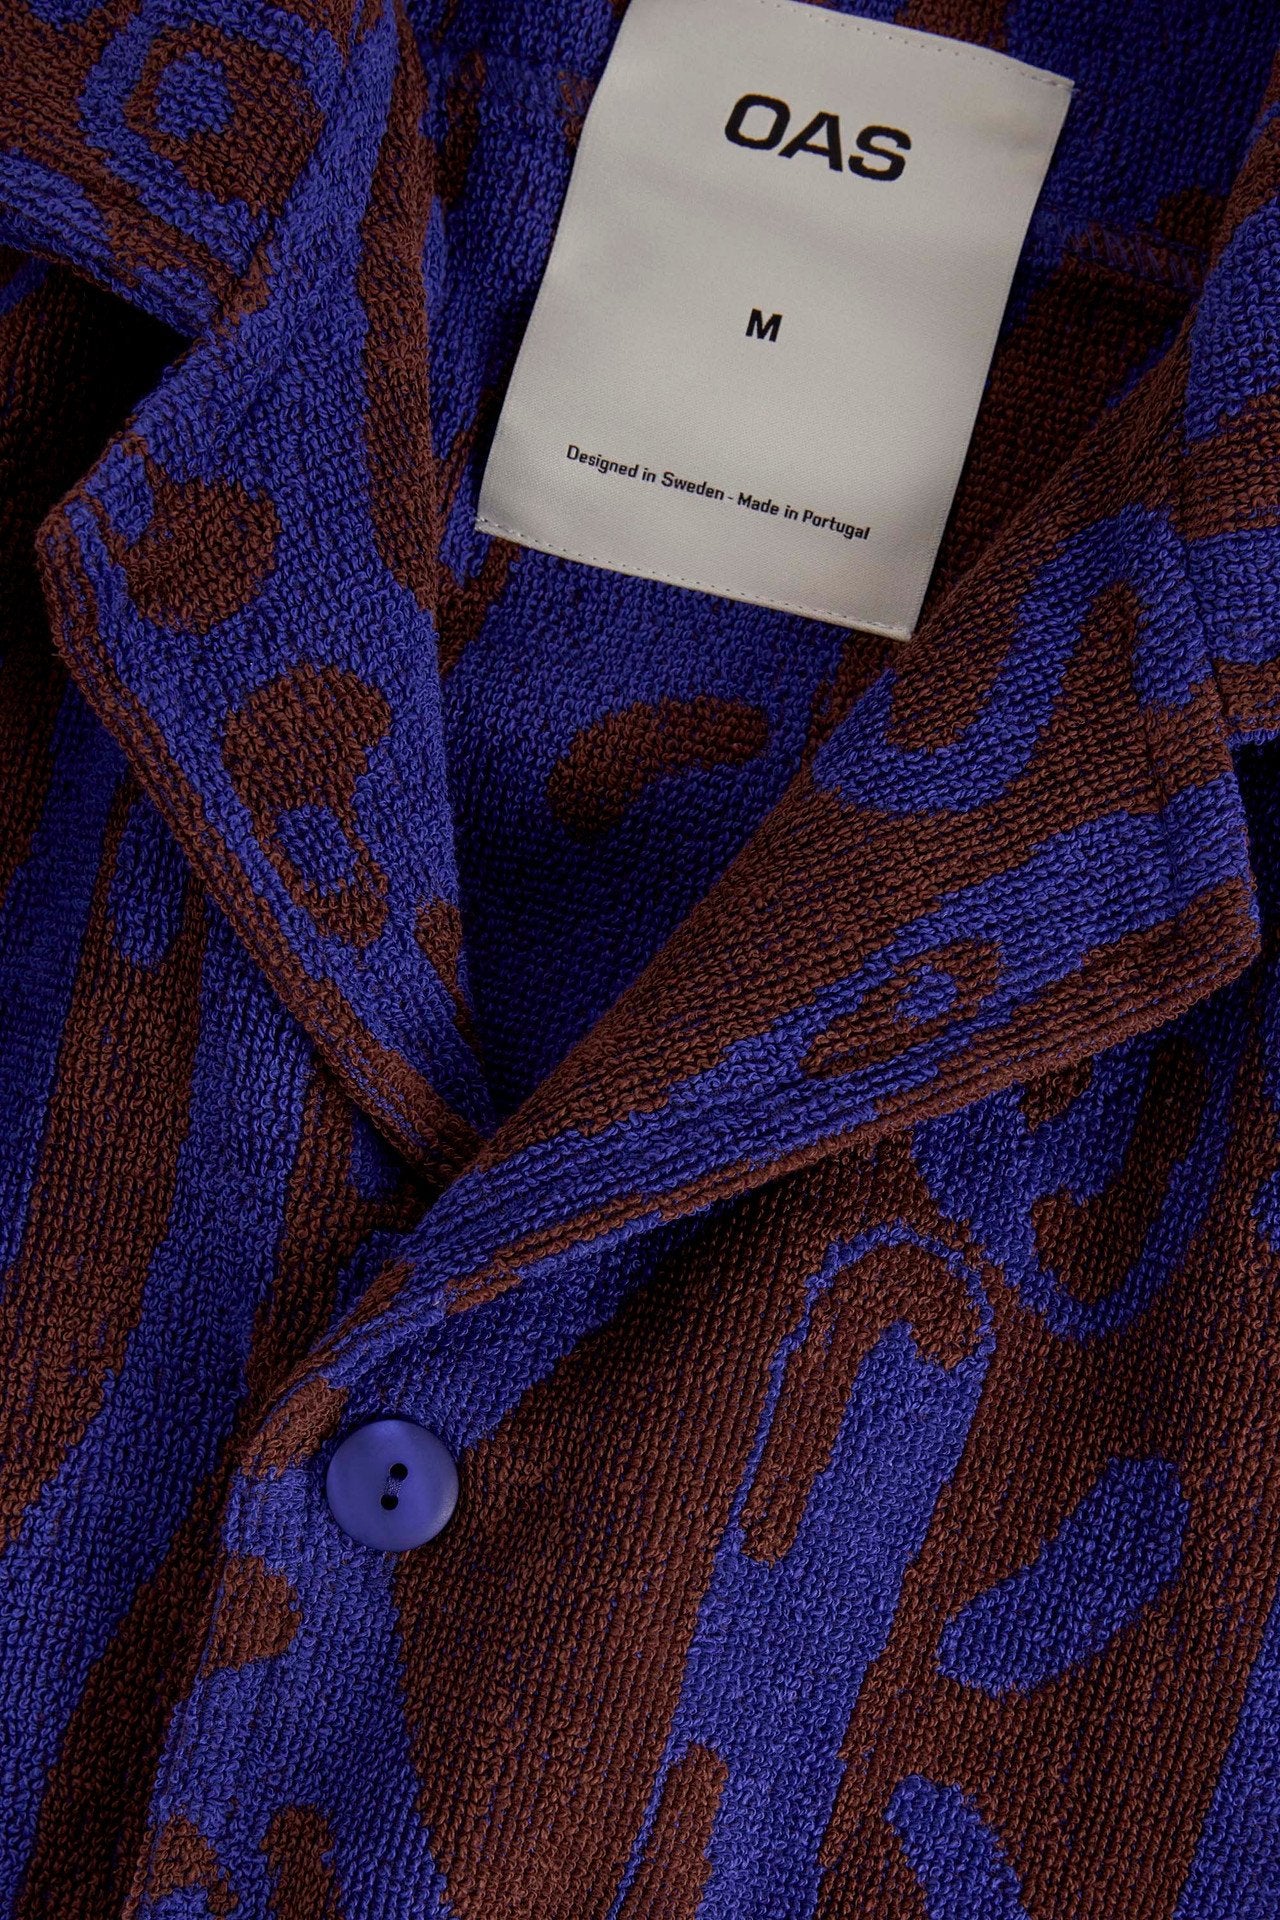 Close-up of OAS Thenards Jiggle Cuba Terry Shirt showing fabric texture